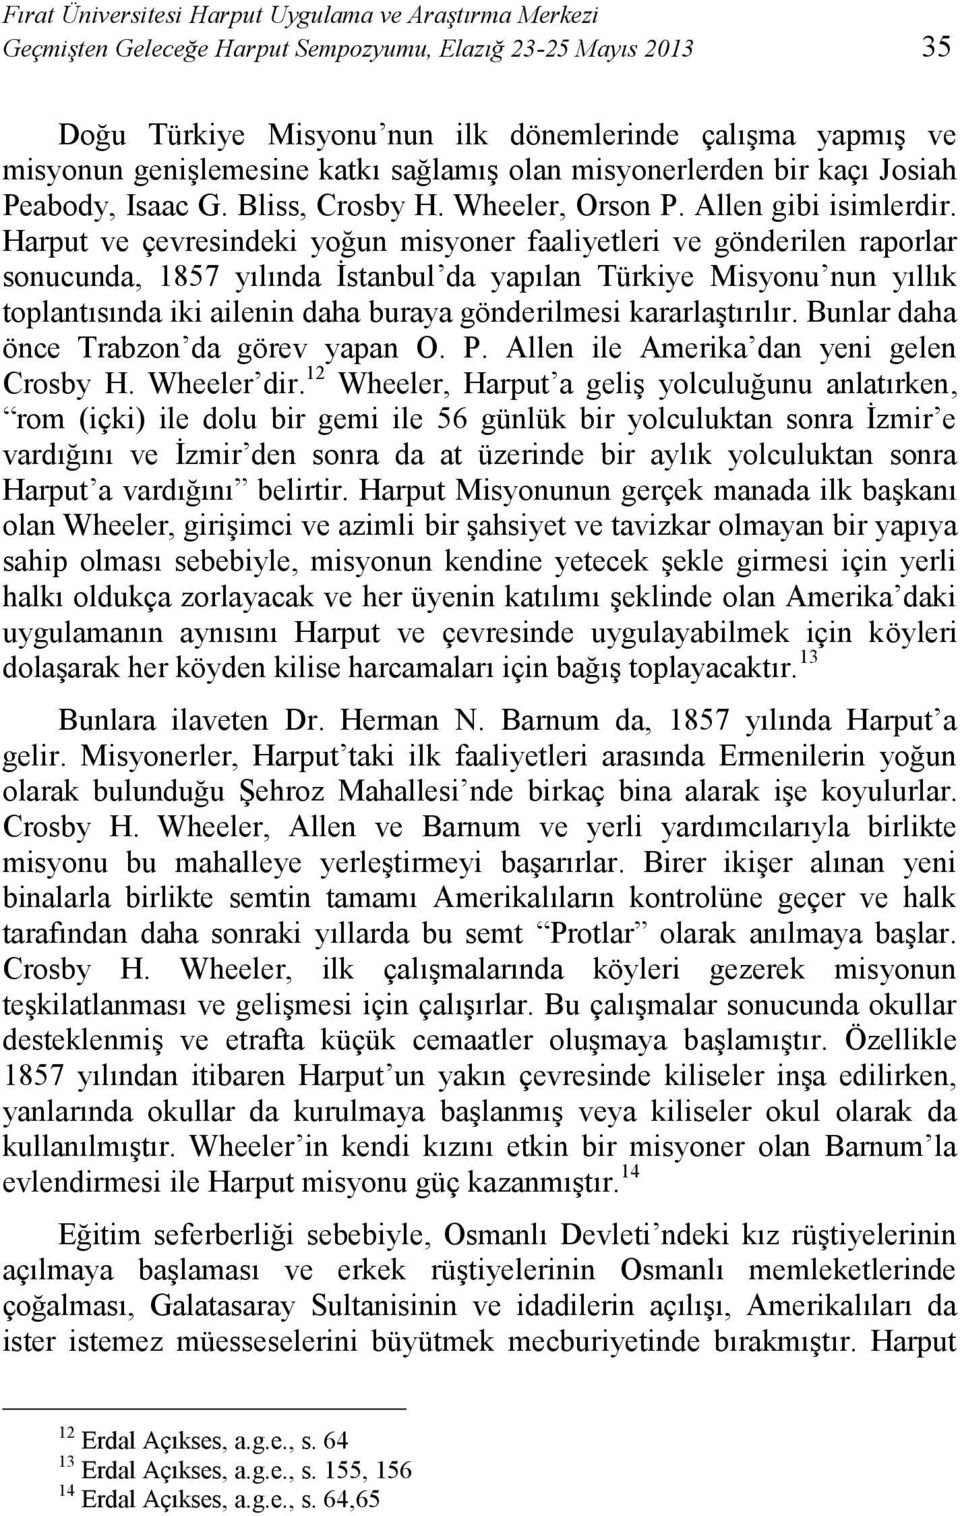 Harput ve çevresindeki yoğun misyoner faaliyetleri ve gönderilen raporlar sonucunda, 1857 yılında İstanbul da yapılan Türkiye Misyonu nun yıllık toplantısında iki ailenin daha buraya gönderilmesi